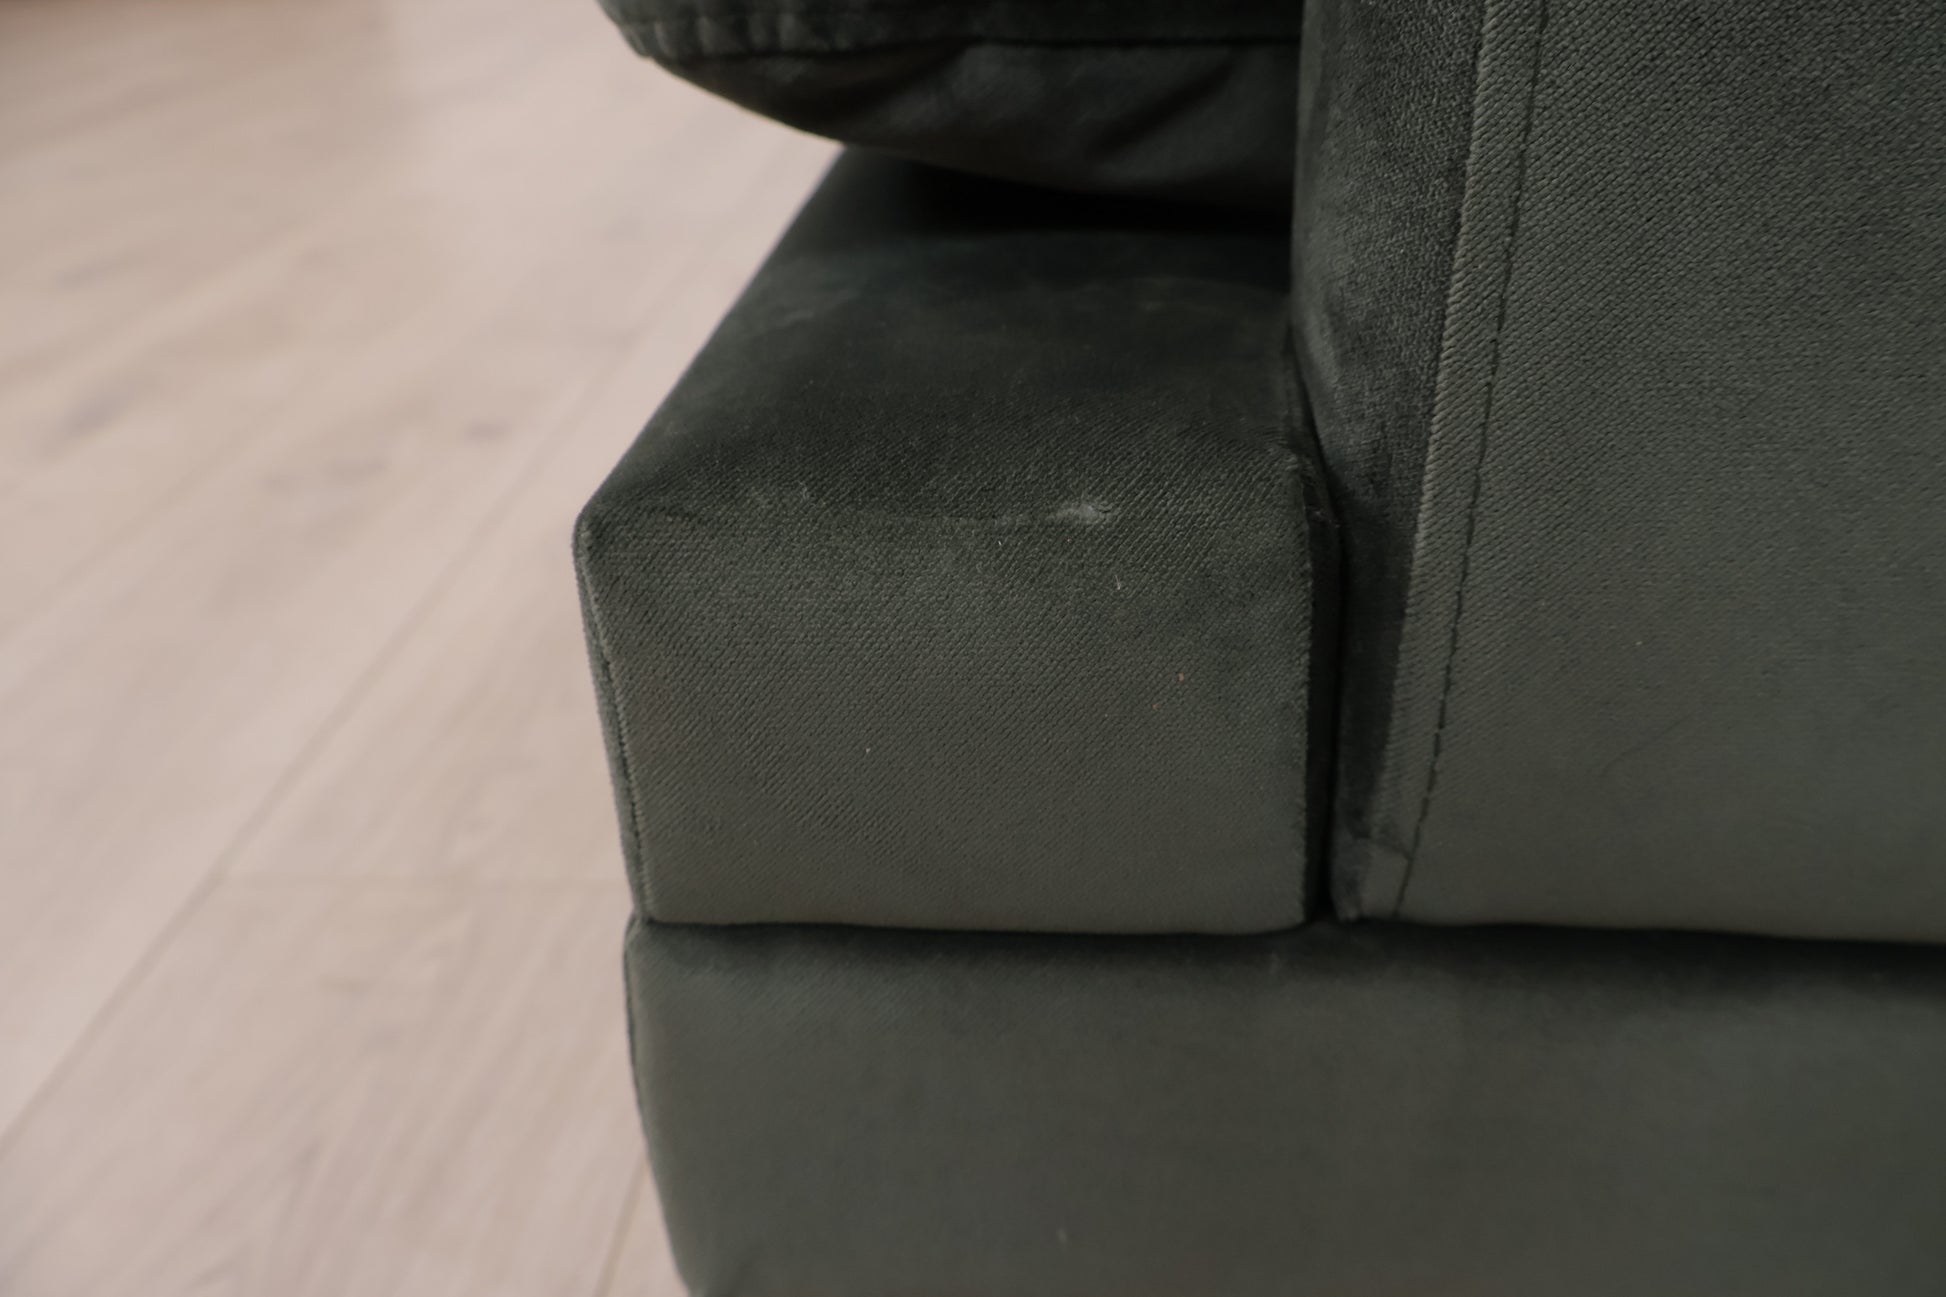 Nyrenset | Grønn Stage 3-seter sofa i velur fra Home & Cottage